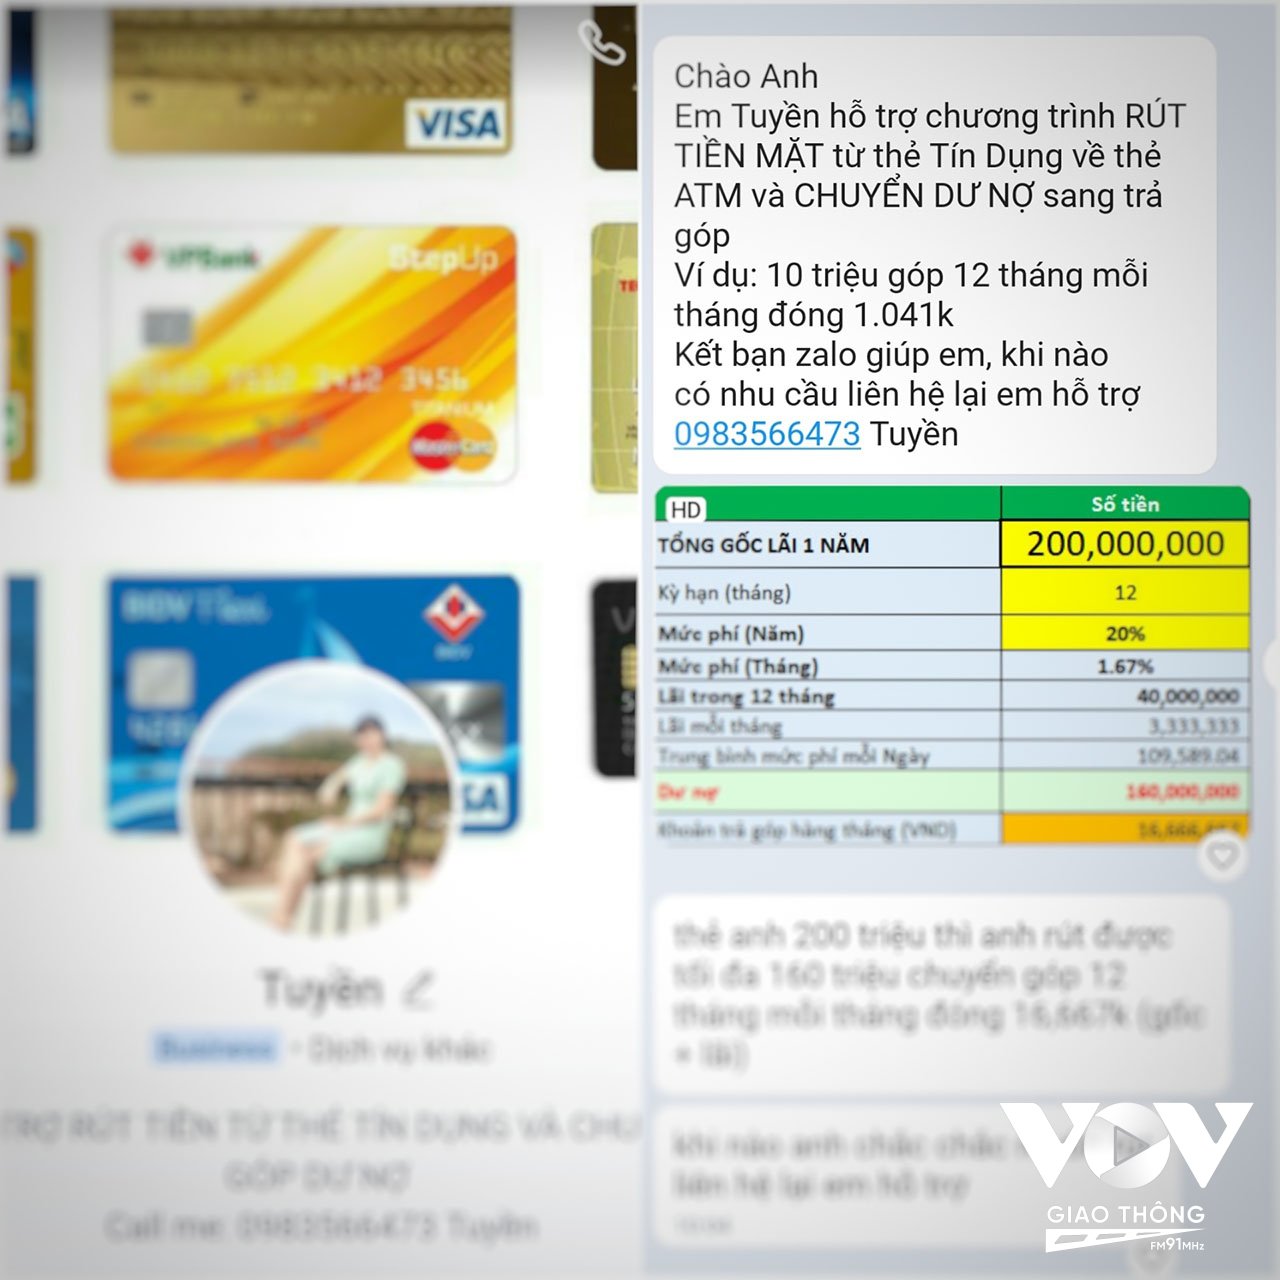 Một nhân viên của công ty Tín Dụng Thắng Lợi gọi điện mời chào người dùng vay tiền ngay sau khi kích hoạt thẻ tín dụng Techcombank